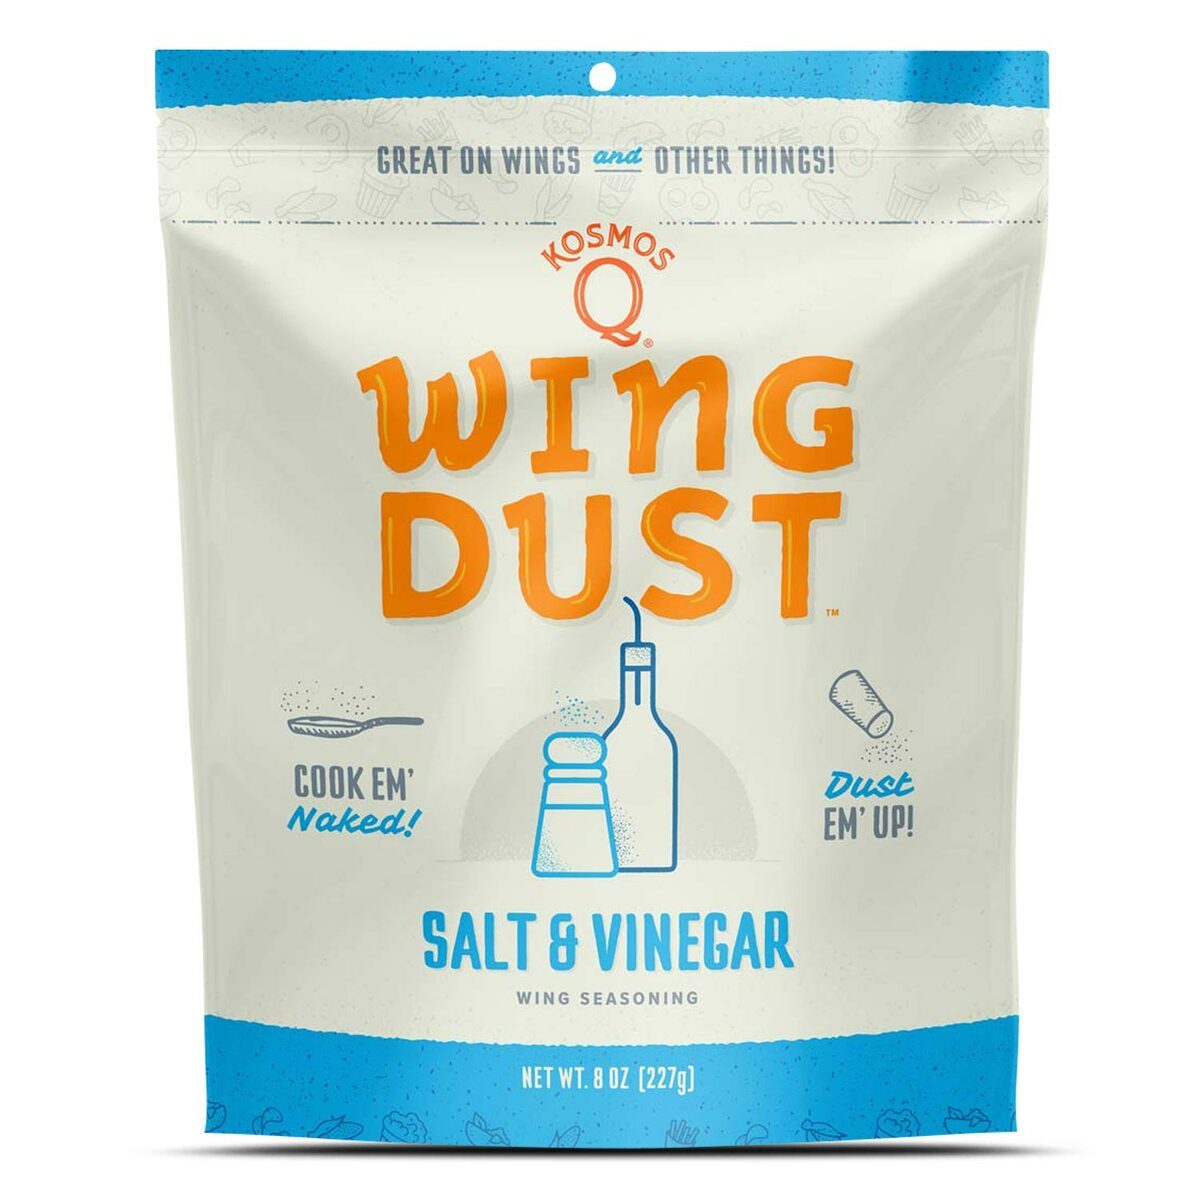 Kosmos Q Wing Dust Salt & Vinegar Dry Rub Seasoning Competition